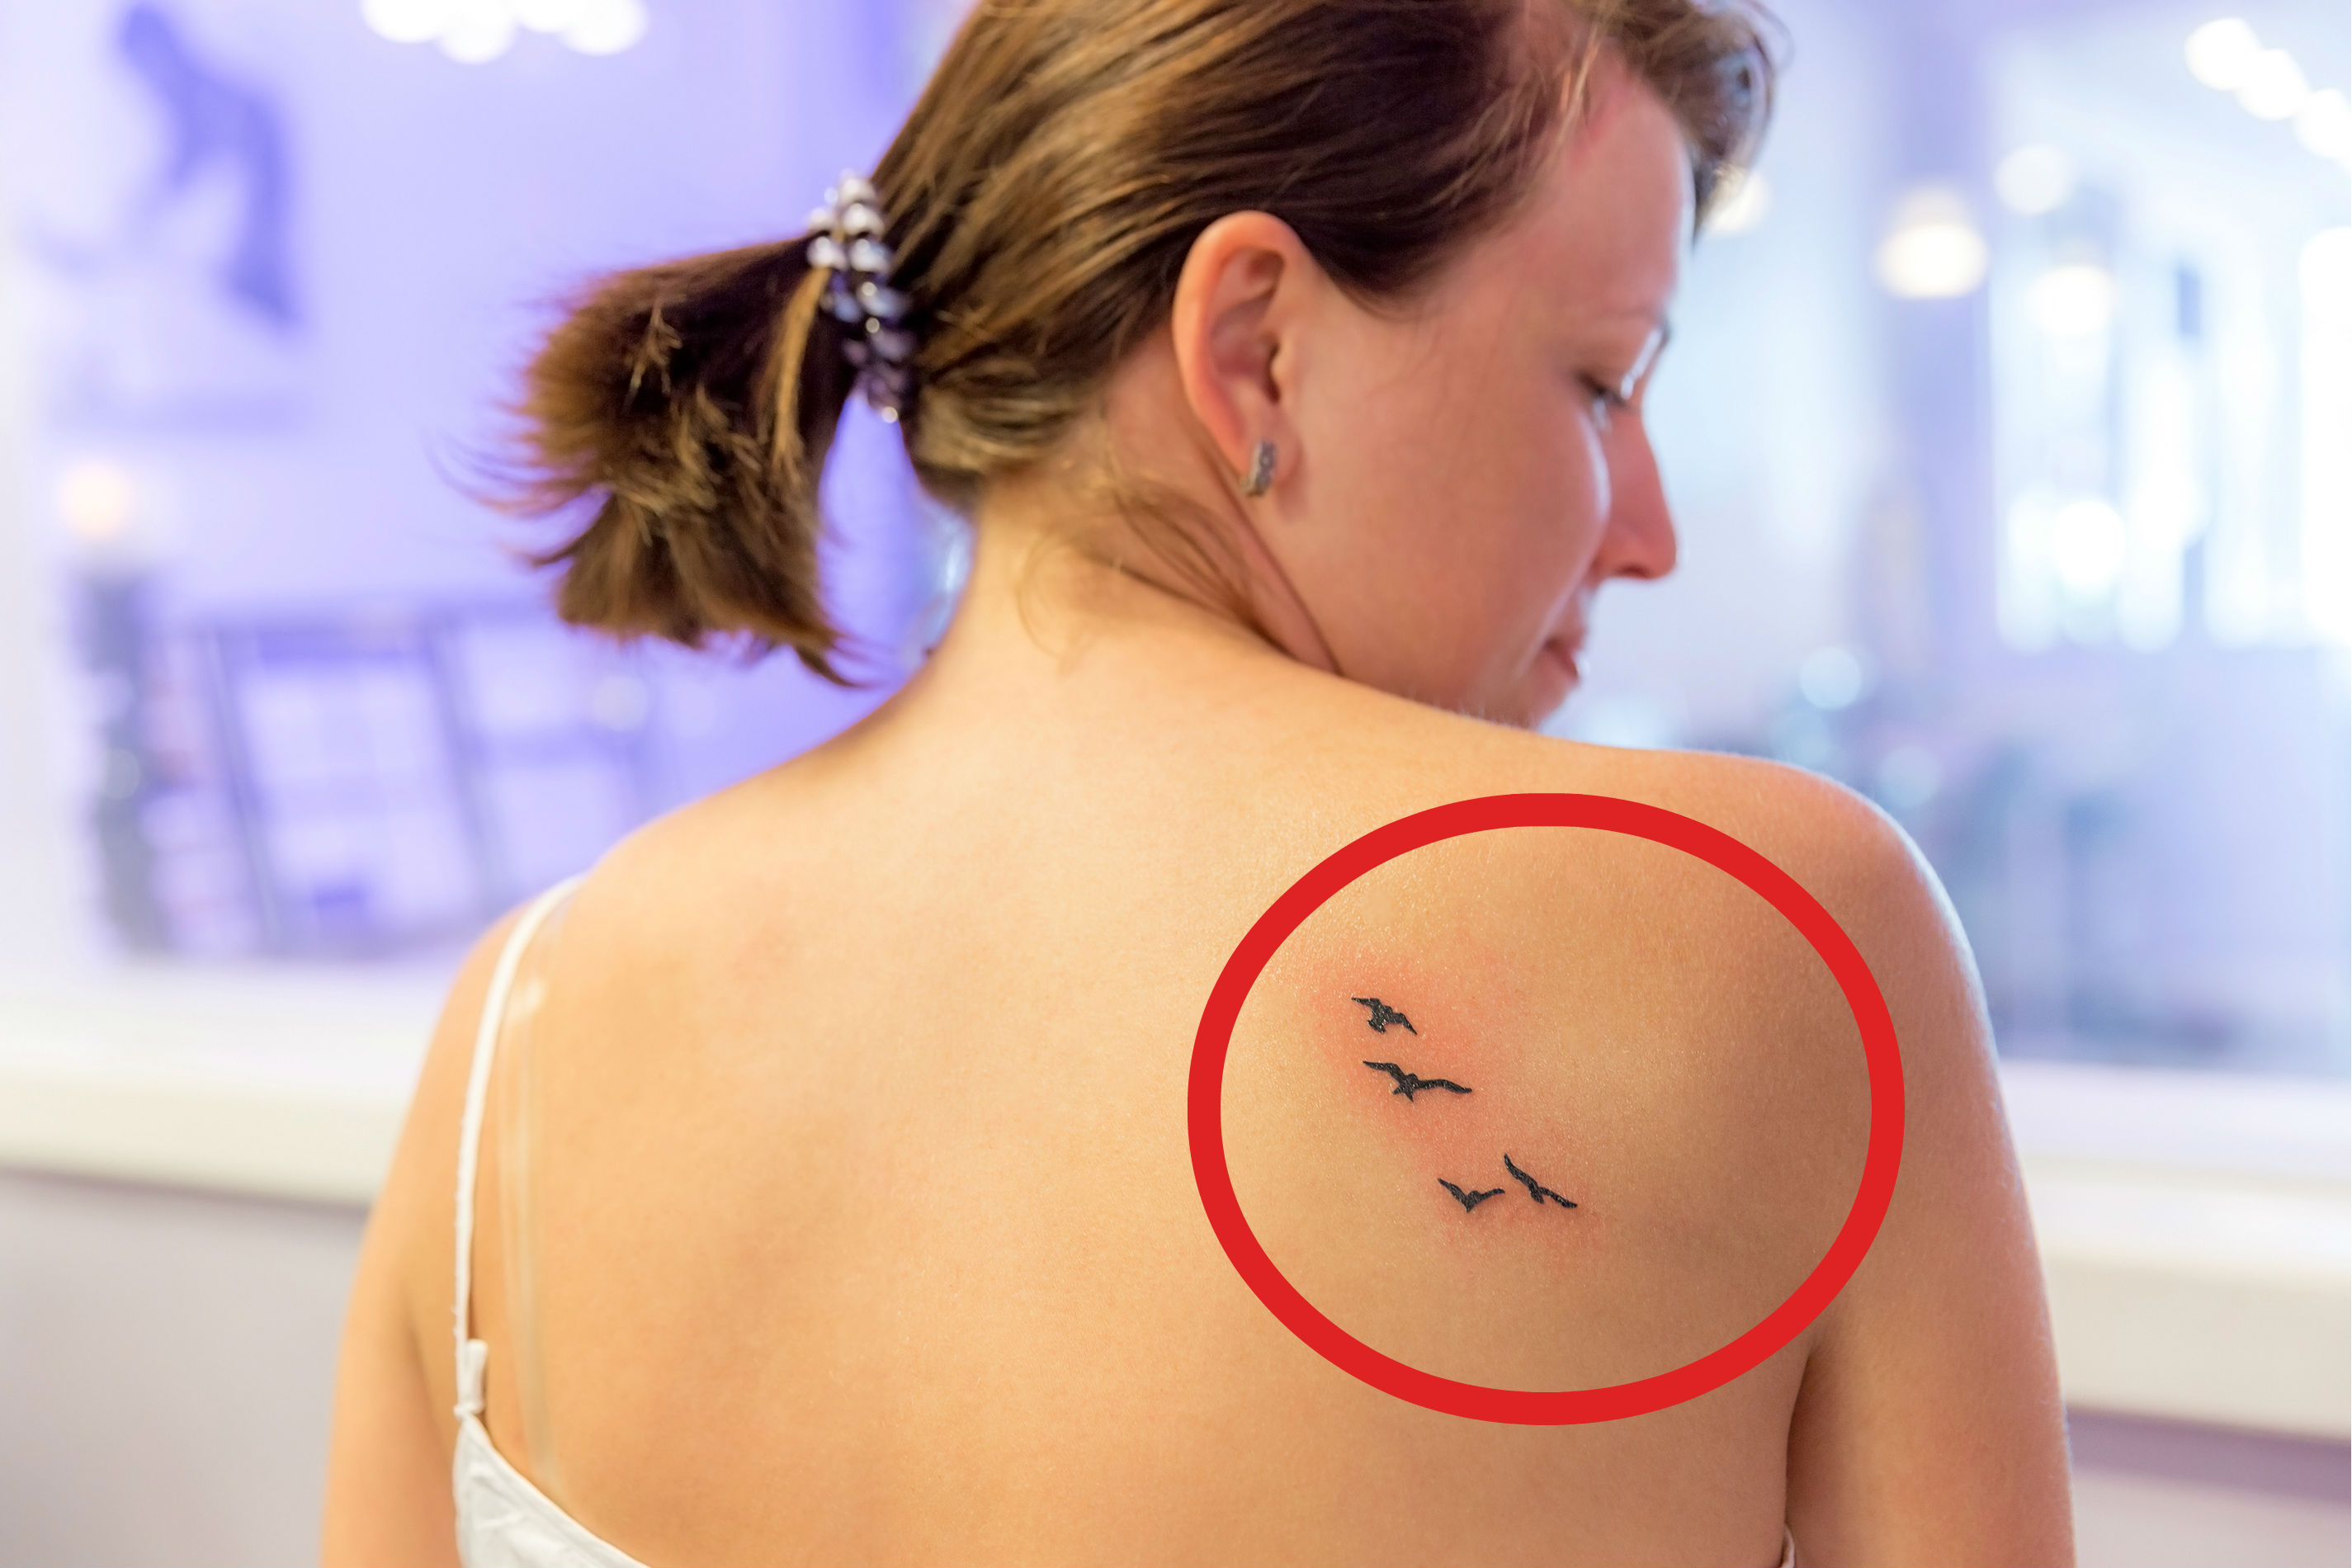 Cómo curar un tatuaje infectado?